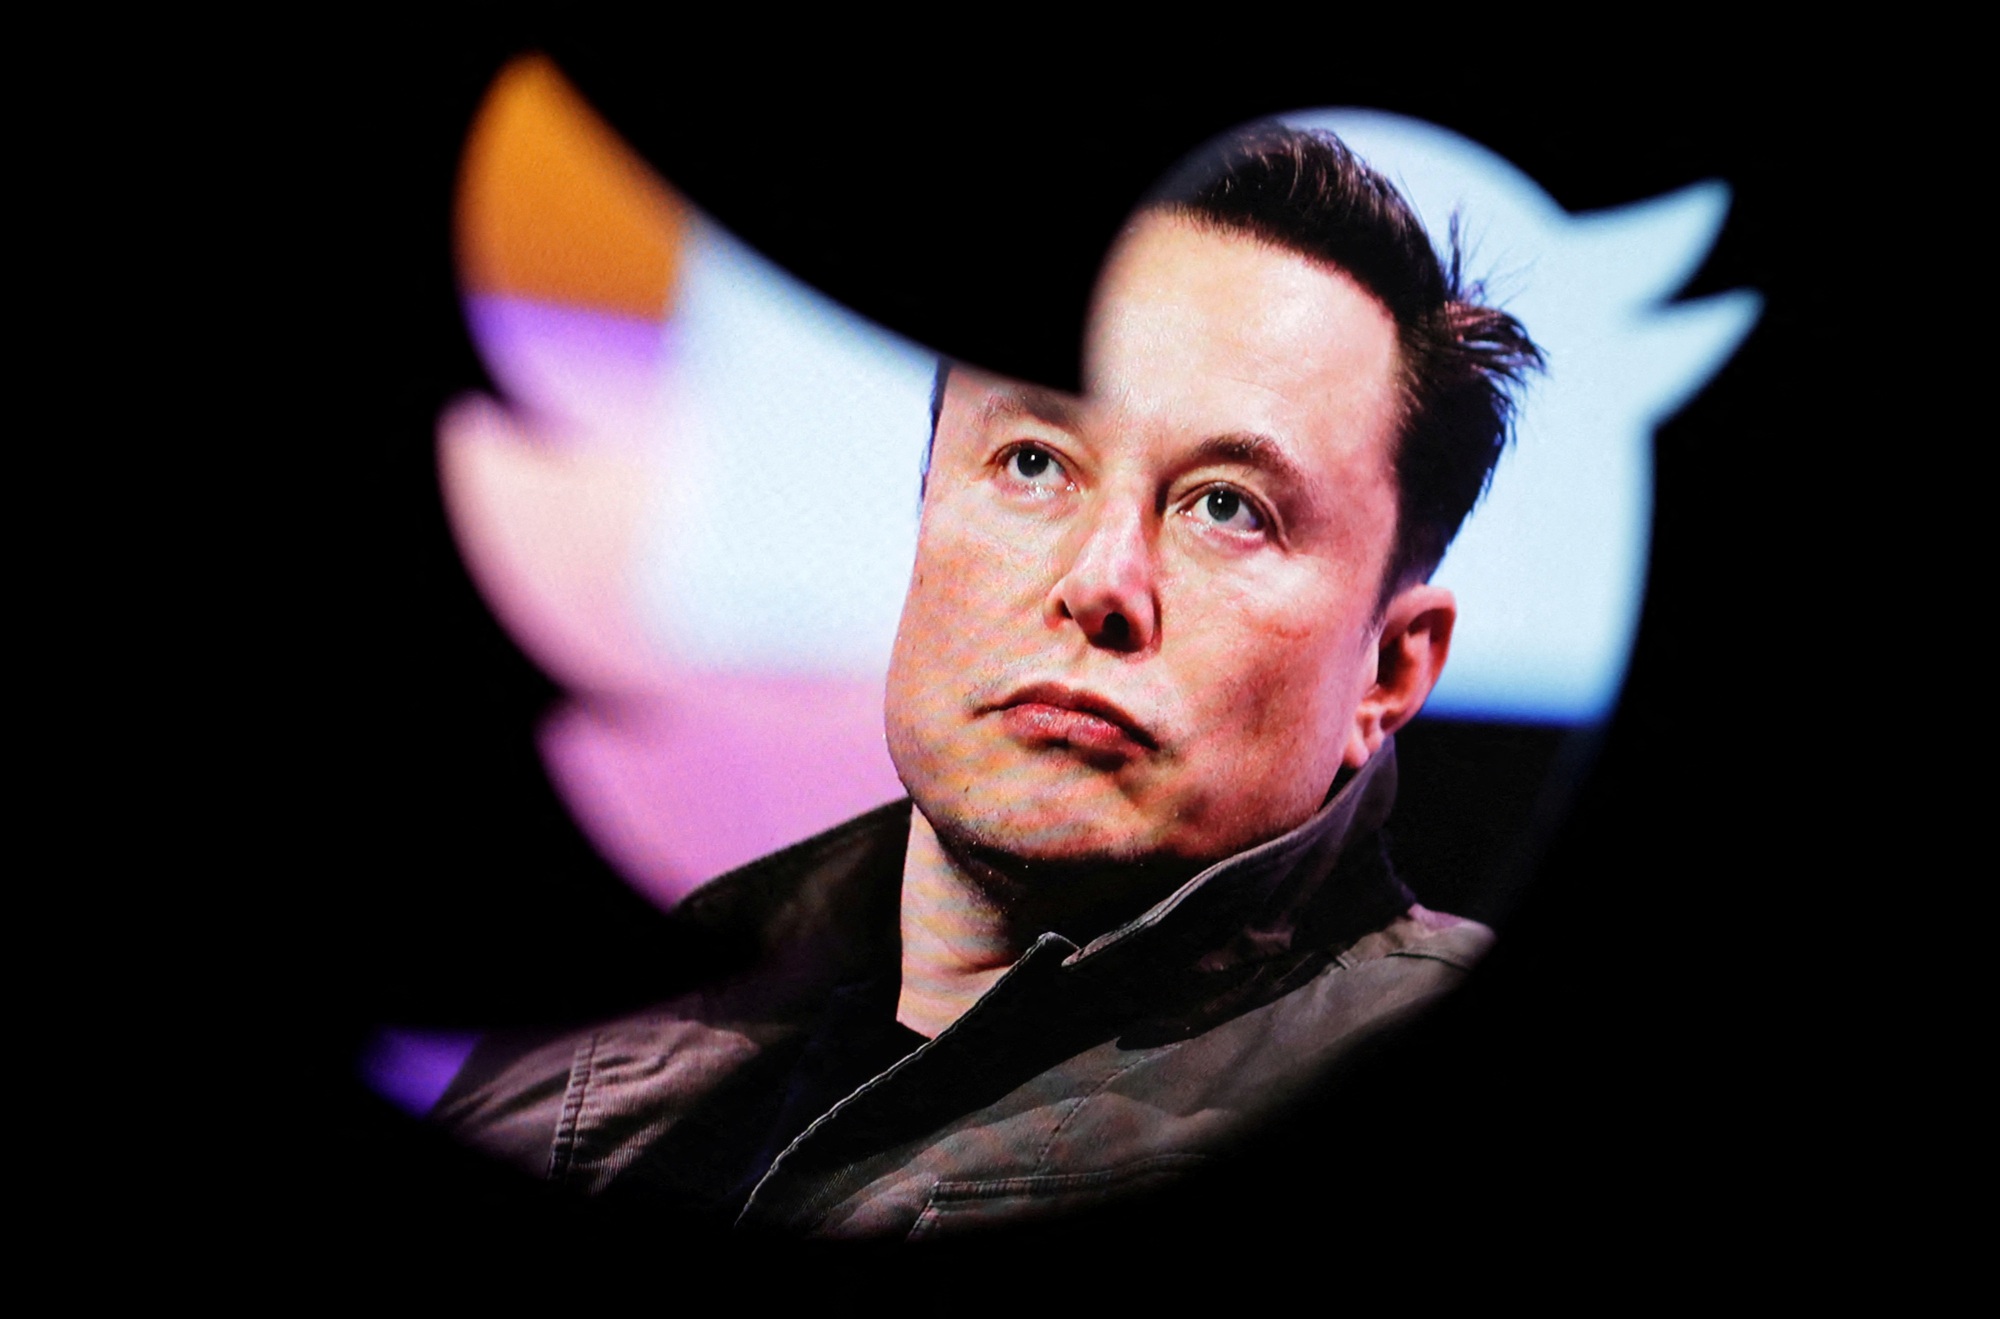 'Ông trùm' công nghệ Elon Musk 'sợ' AI, kêu gọi làm luật kiểm soát - Ảnh 1.